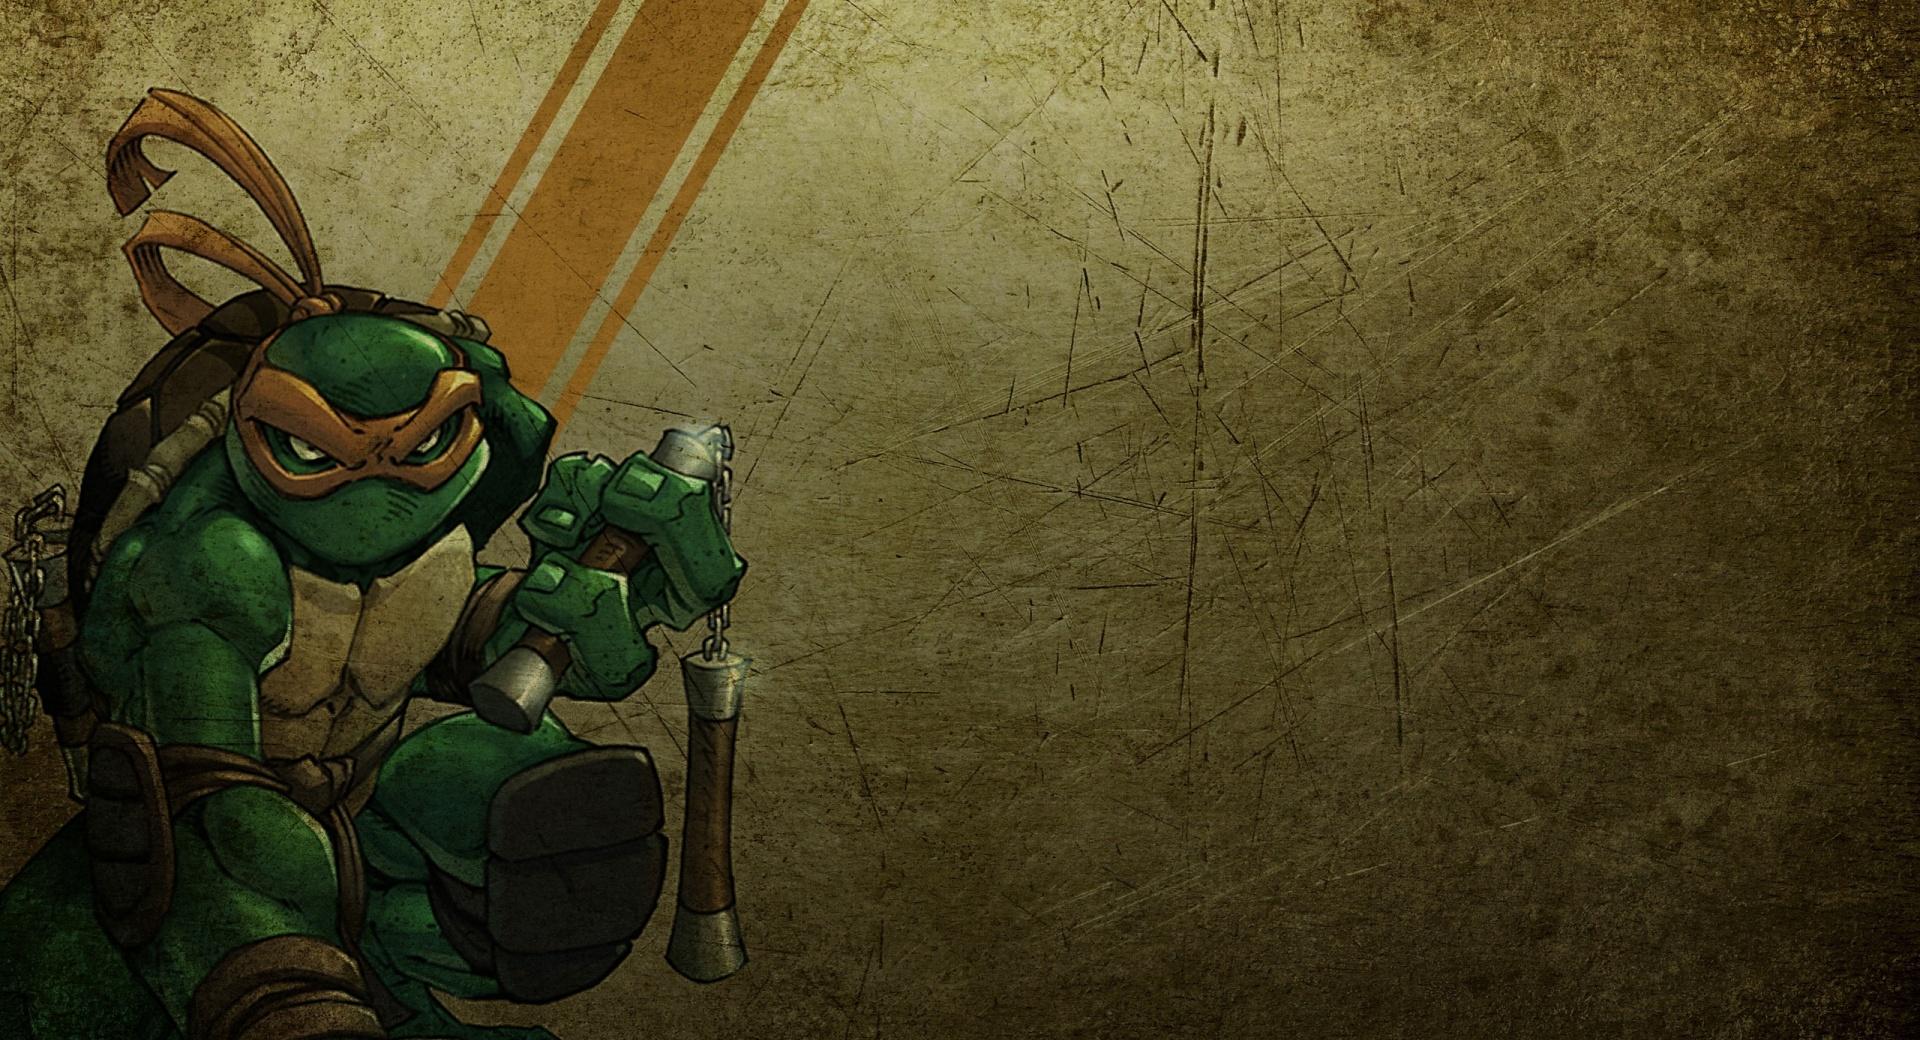 Michelangelo Teenage Mutant Ninja Turtles wallpapers HD quality